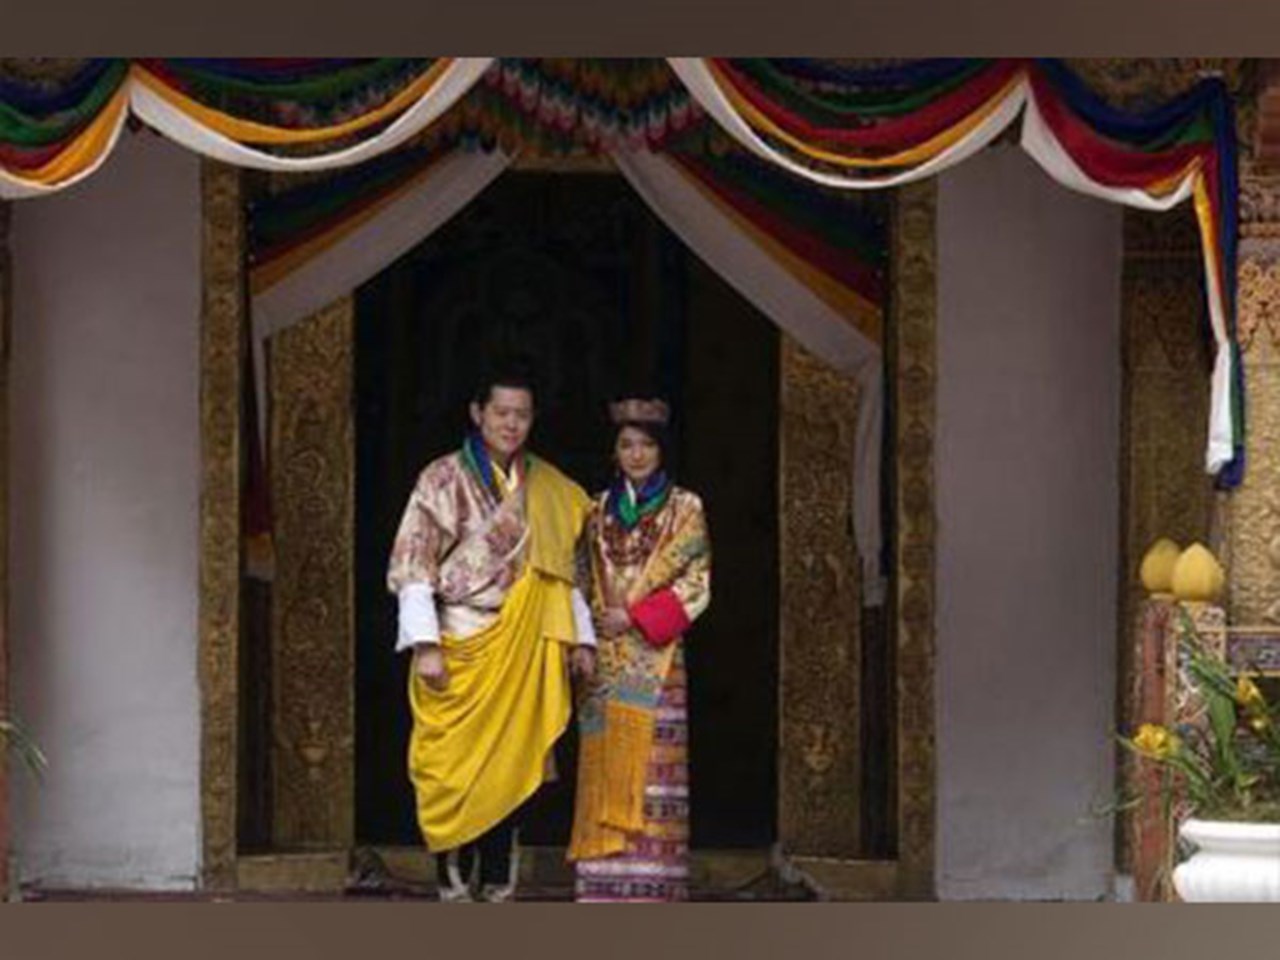 La realeza butanesa visita el Palacio de Buckingham con traje tradicional